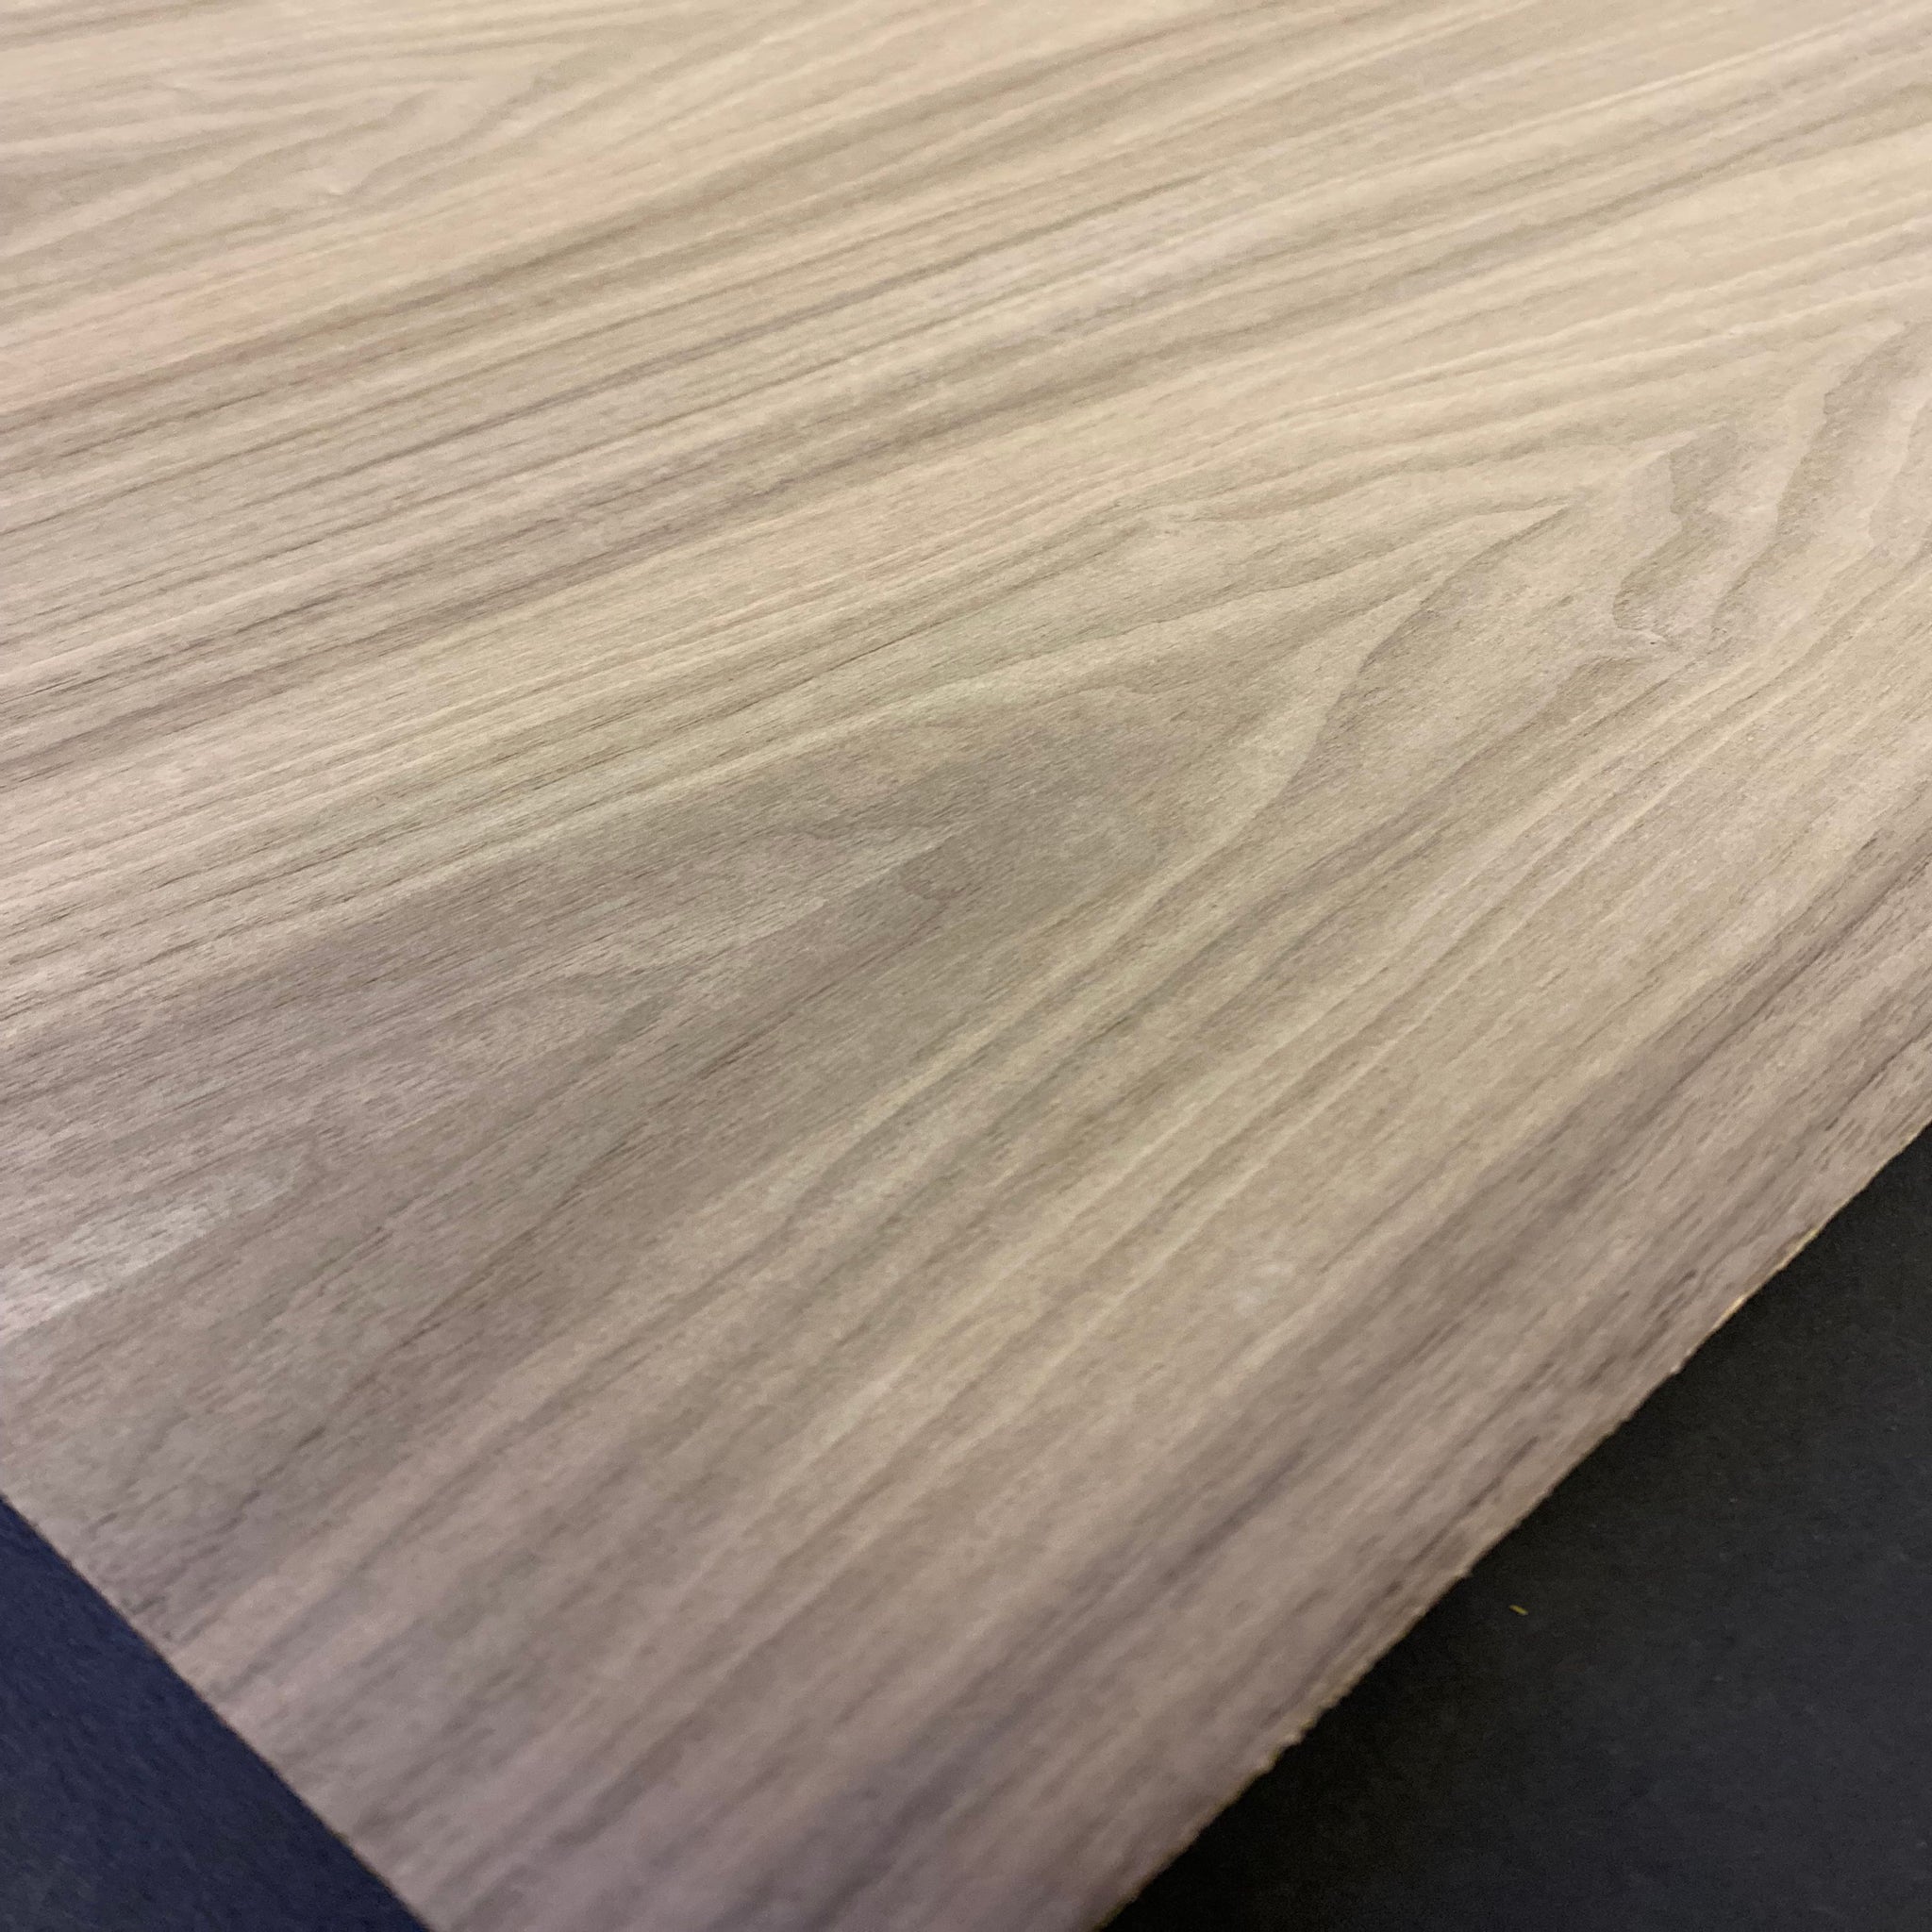 Walnut Diagonal Grain Wood Veneer Sheet 24 X 24 on Paper Backer 1